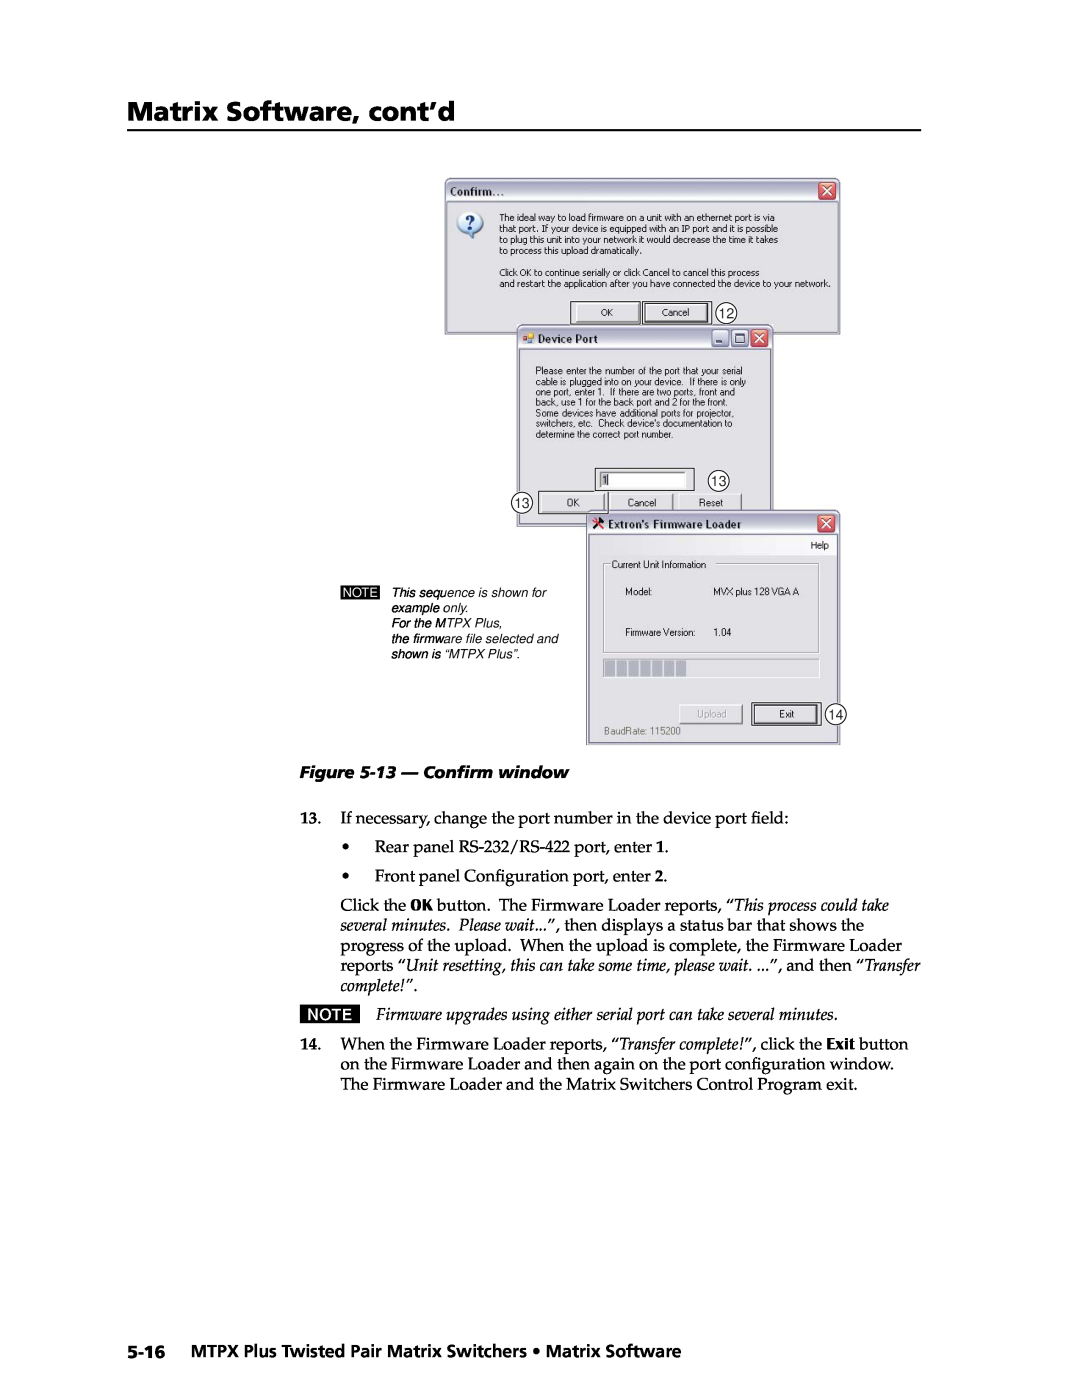 Extron electronic MTPX Plus Series manual Matrix Software, cont’d, 13 - Confirm window 